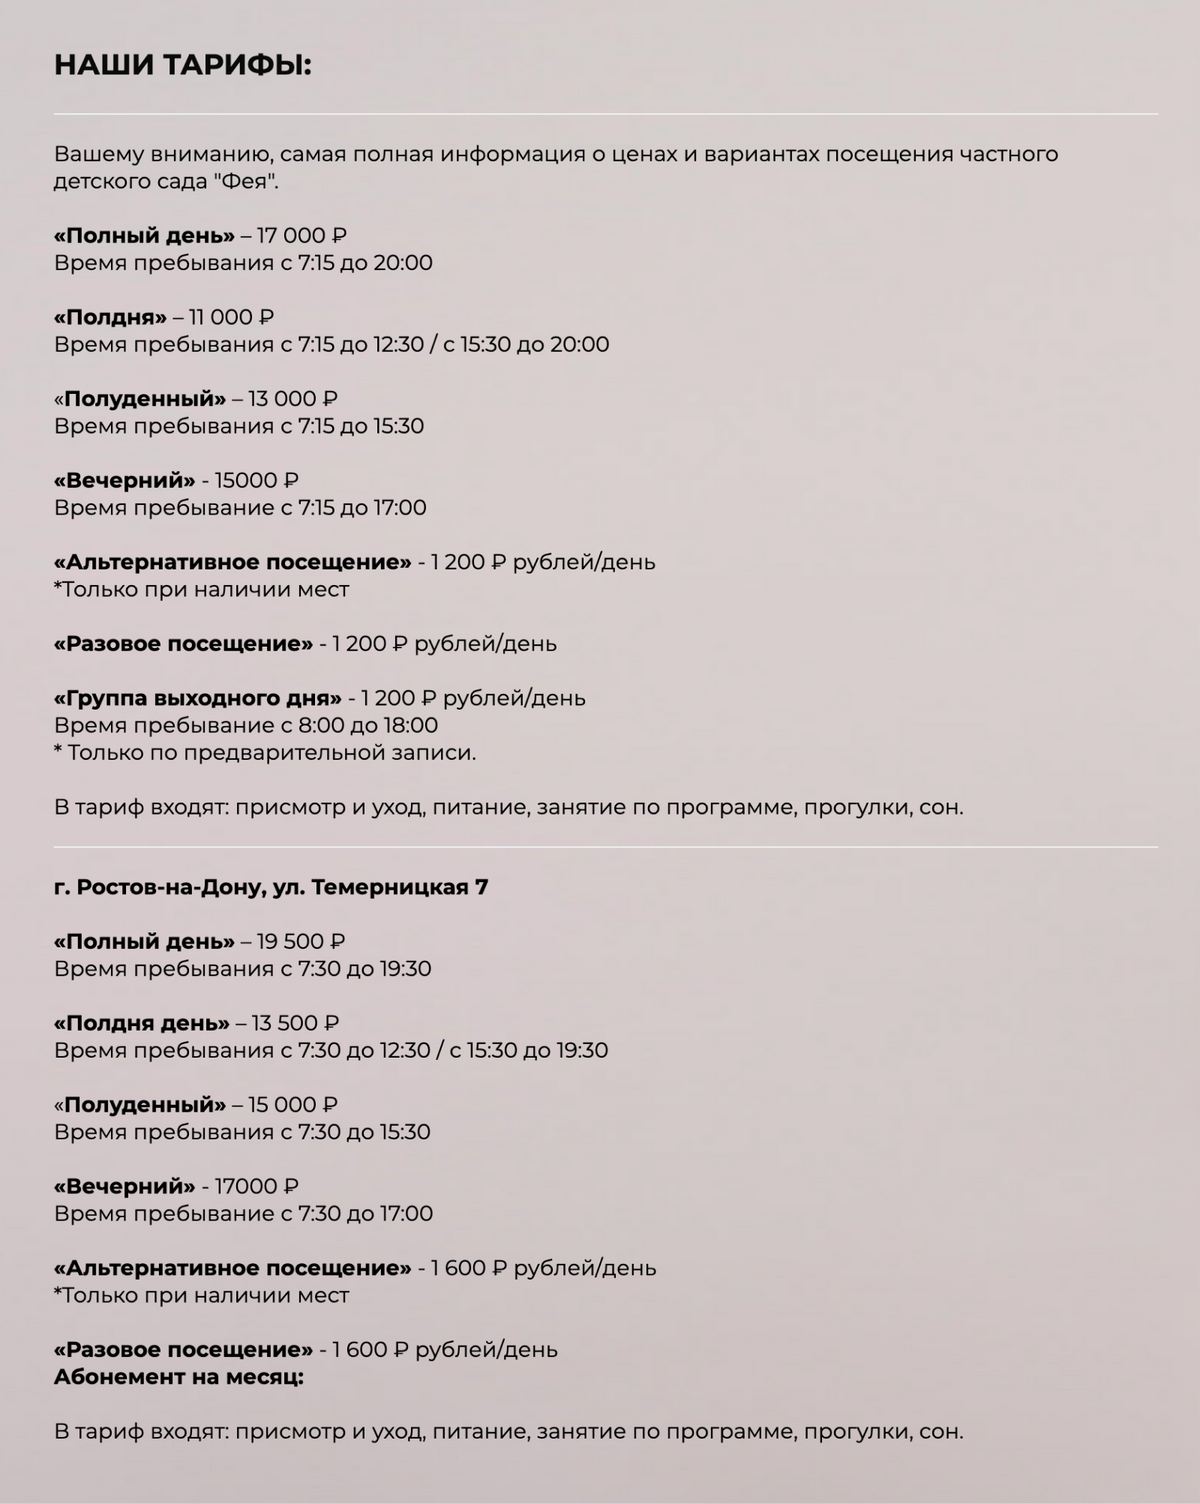 Расценки частного детского сада «Фея». Источник:&nbsp;dsfeya.ru